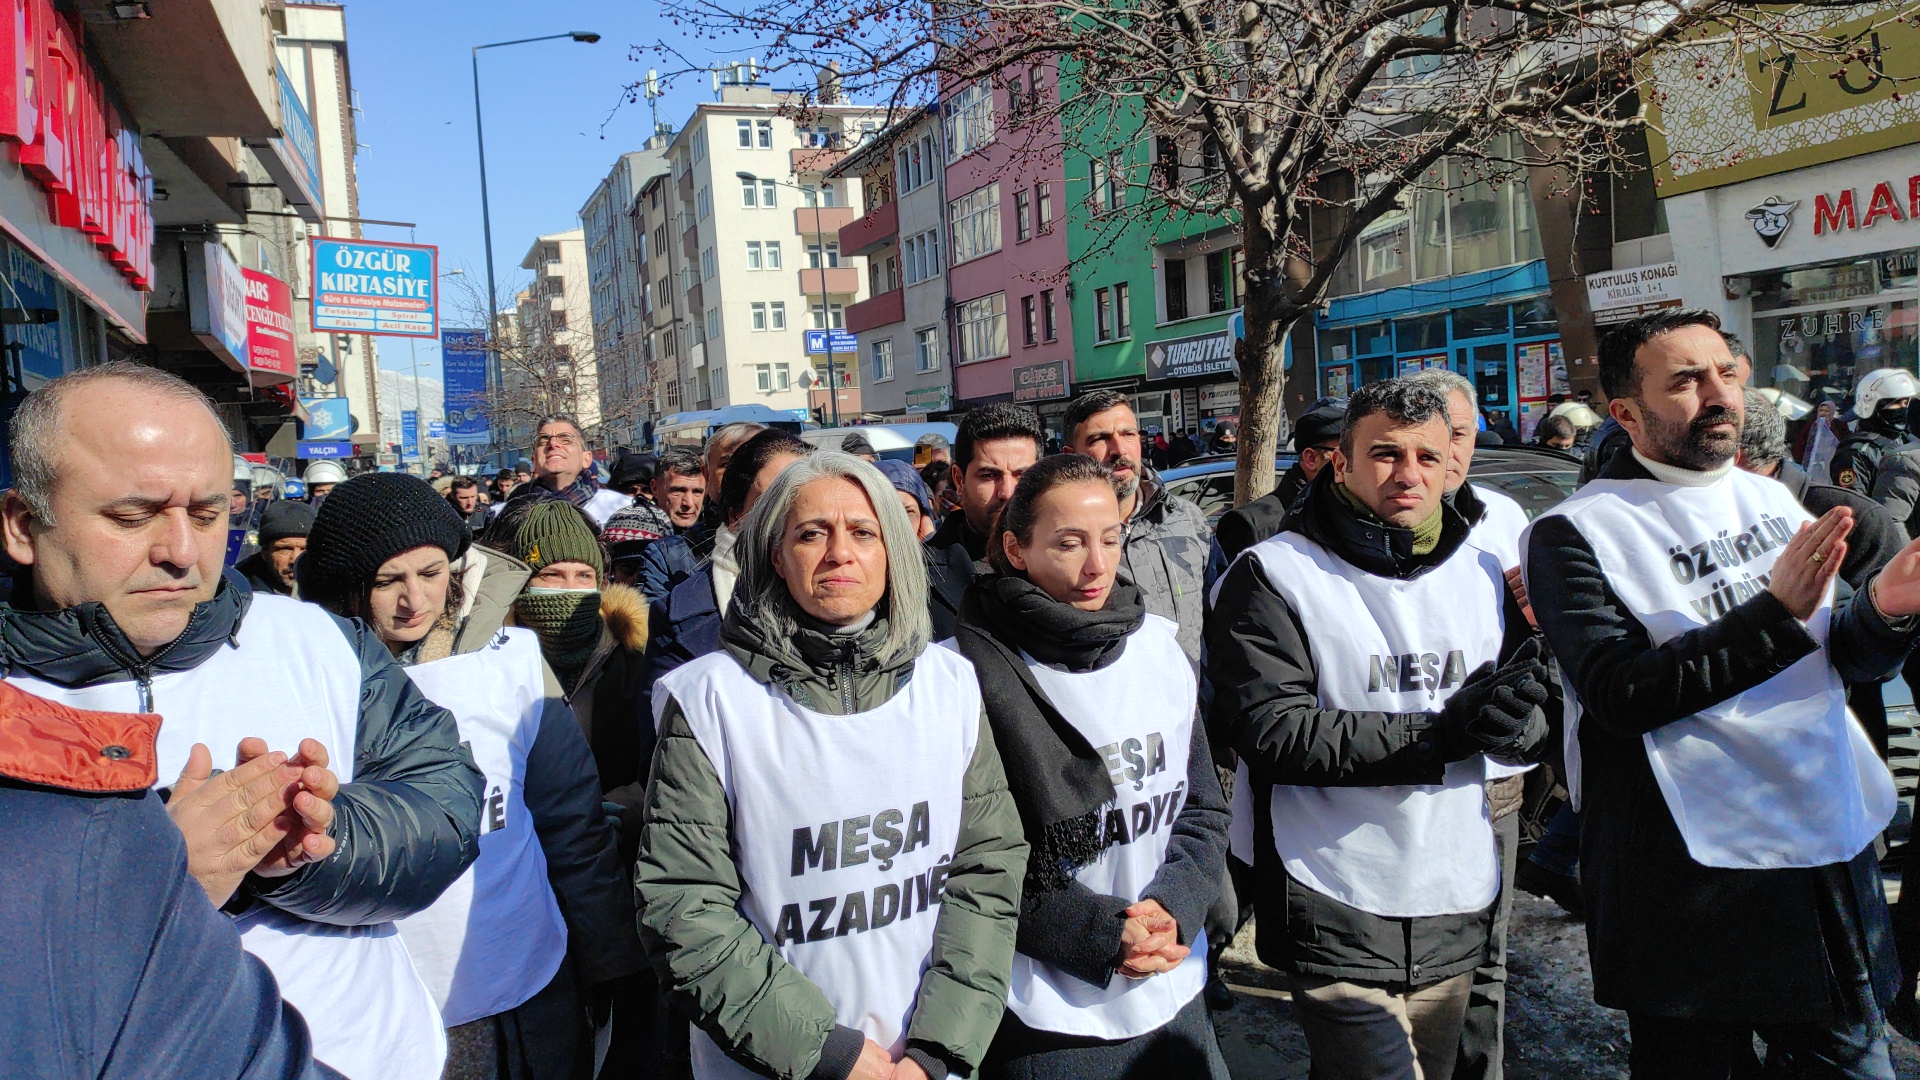 Kars'ta DEM Parti’nin 'Özgürlük Yürüyüşü' başladı